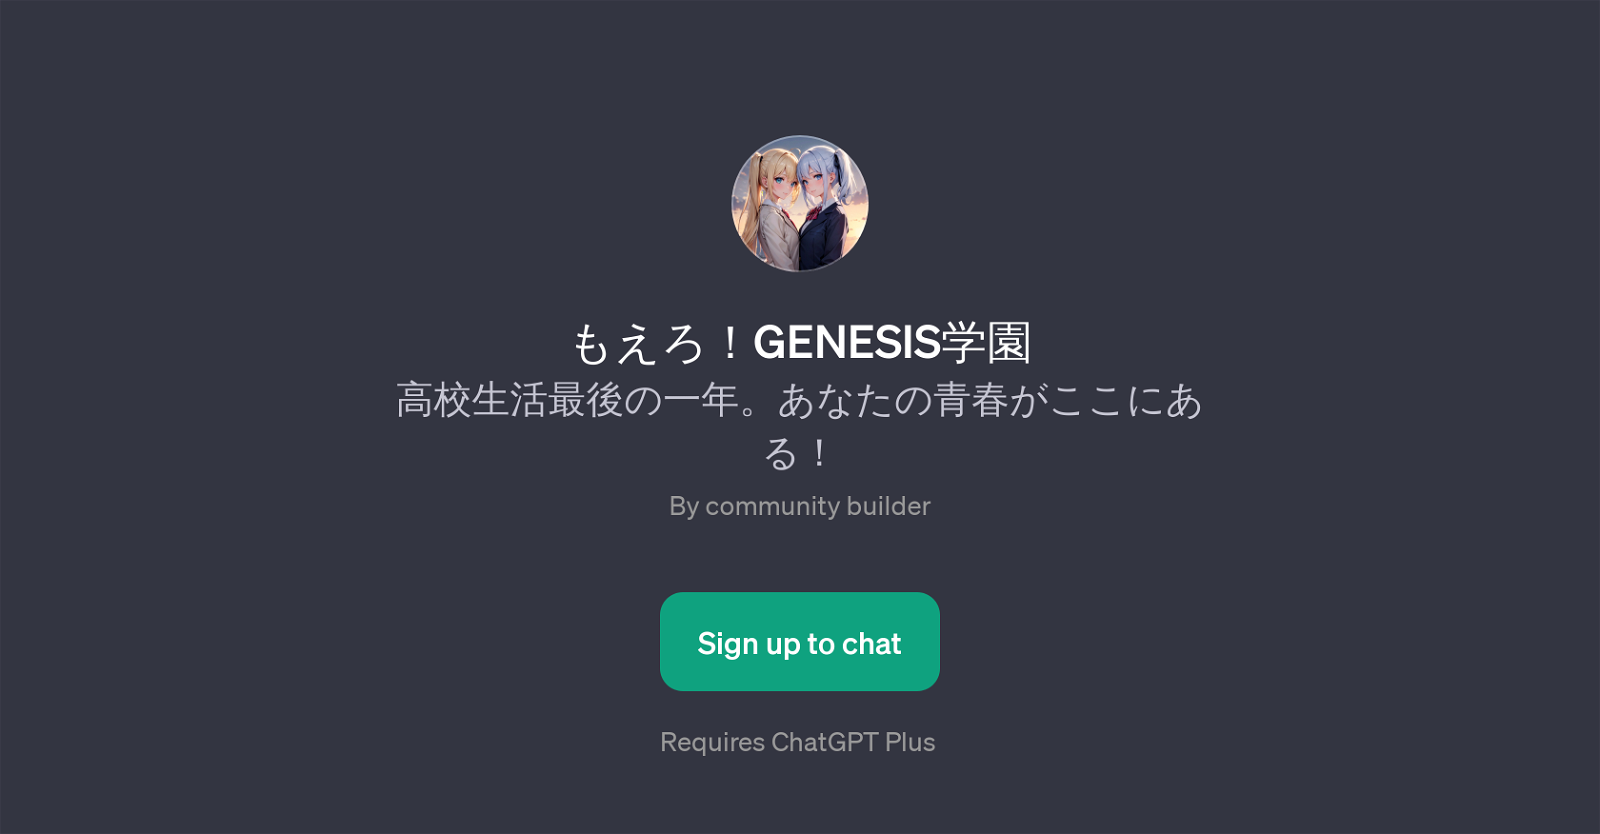 GENESIS website